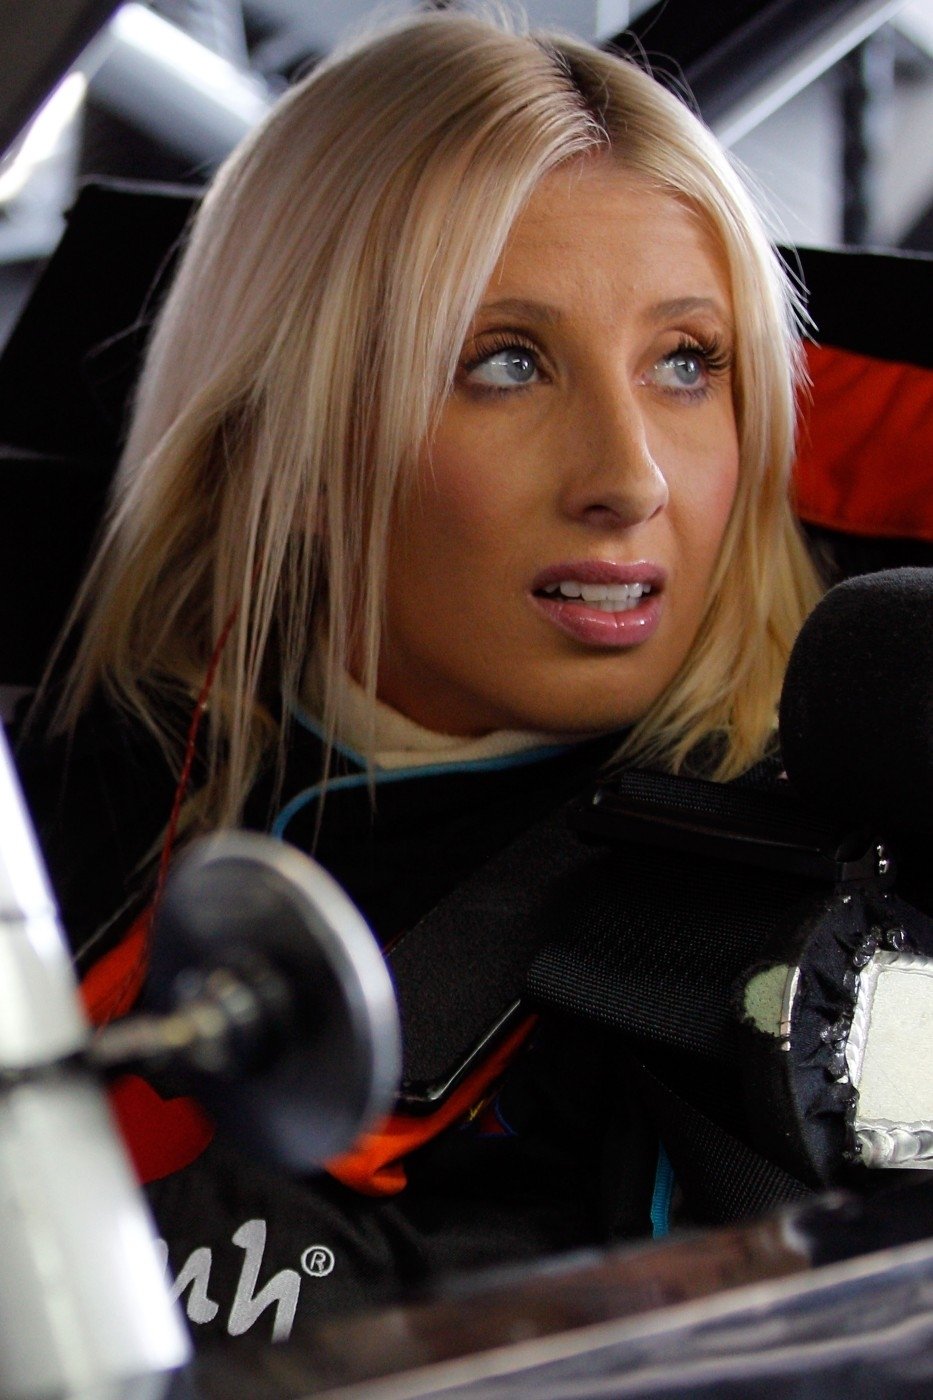 Angela Cope v kokpitu závodního speciálu NASCAR